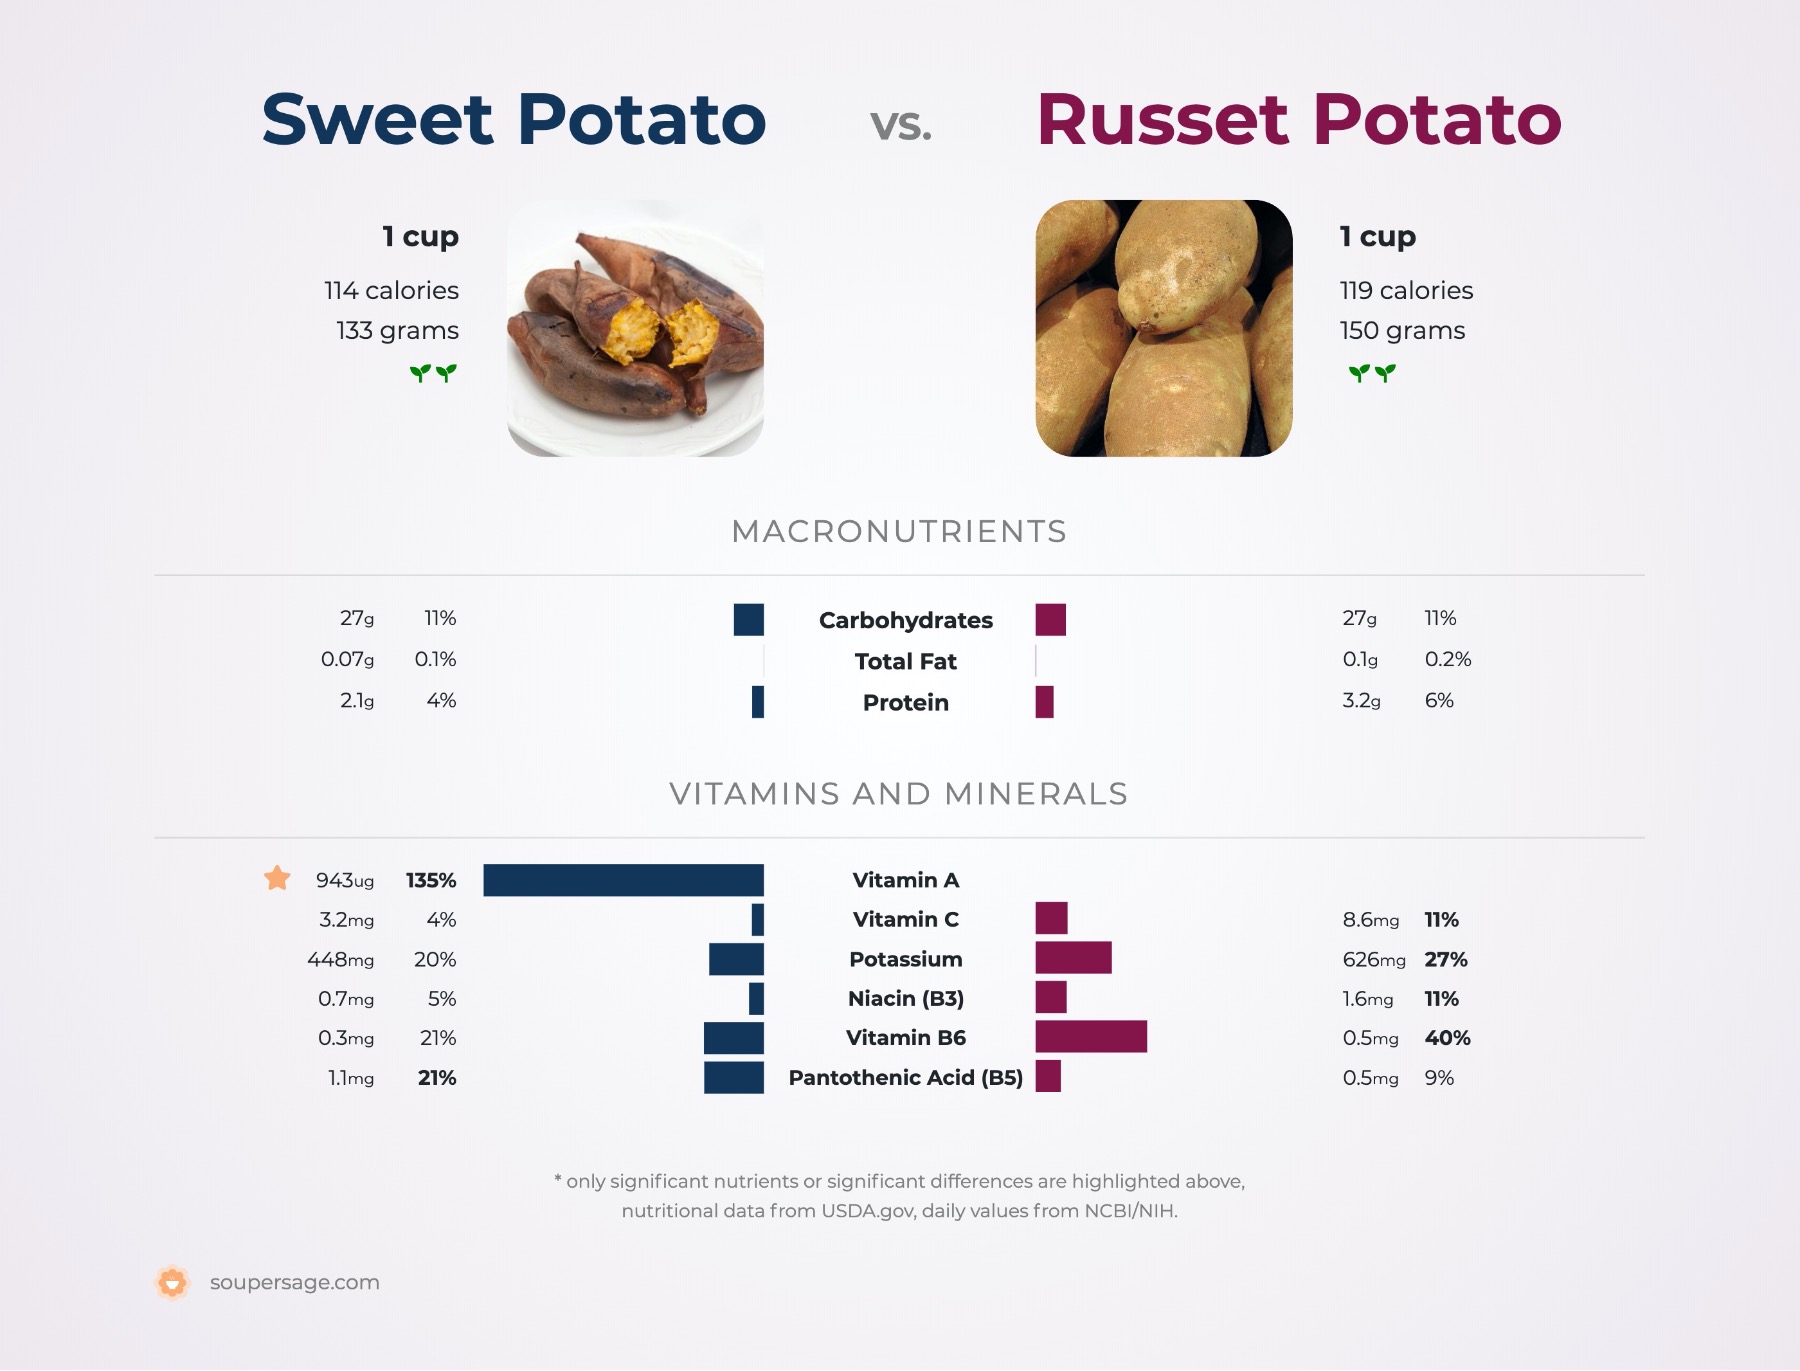 nutrition comparison of russet potato vs. sweet potatoes